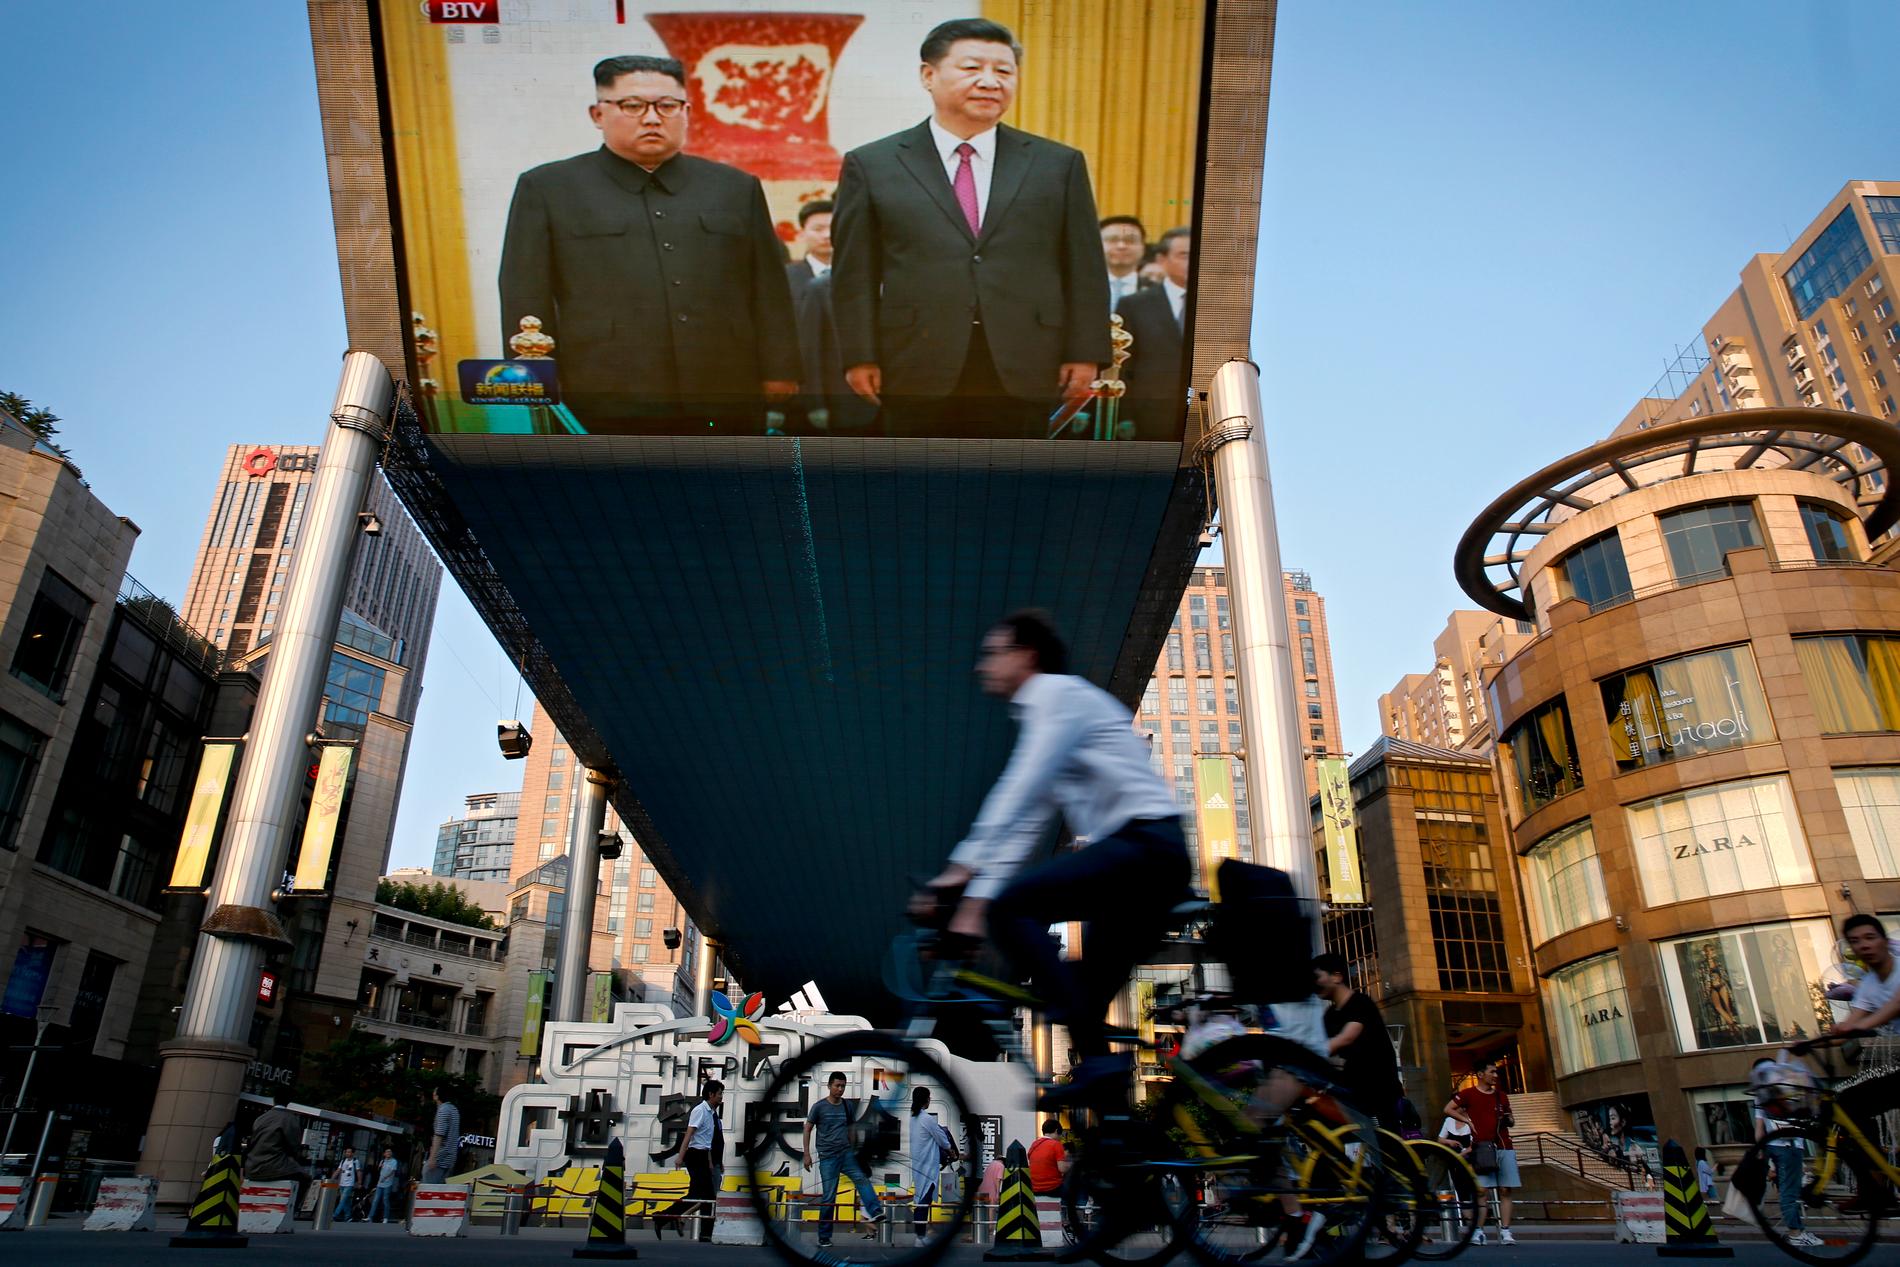 Cyklister passerar en stor tv-skärm i Peking med en sändning från ceremonin där Nordkoreas ledare Kim Jong-Un välkomnades av Kinas president Xi Jinping i Folkets stora sal på tisdagen.